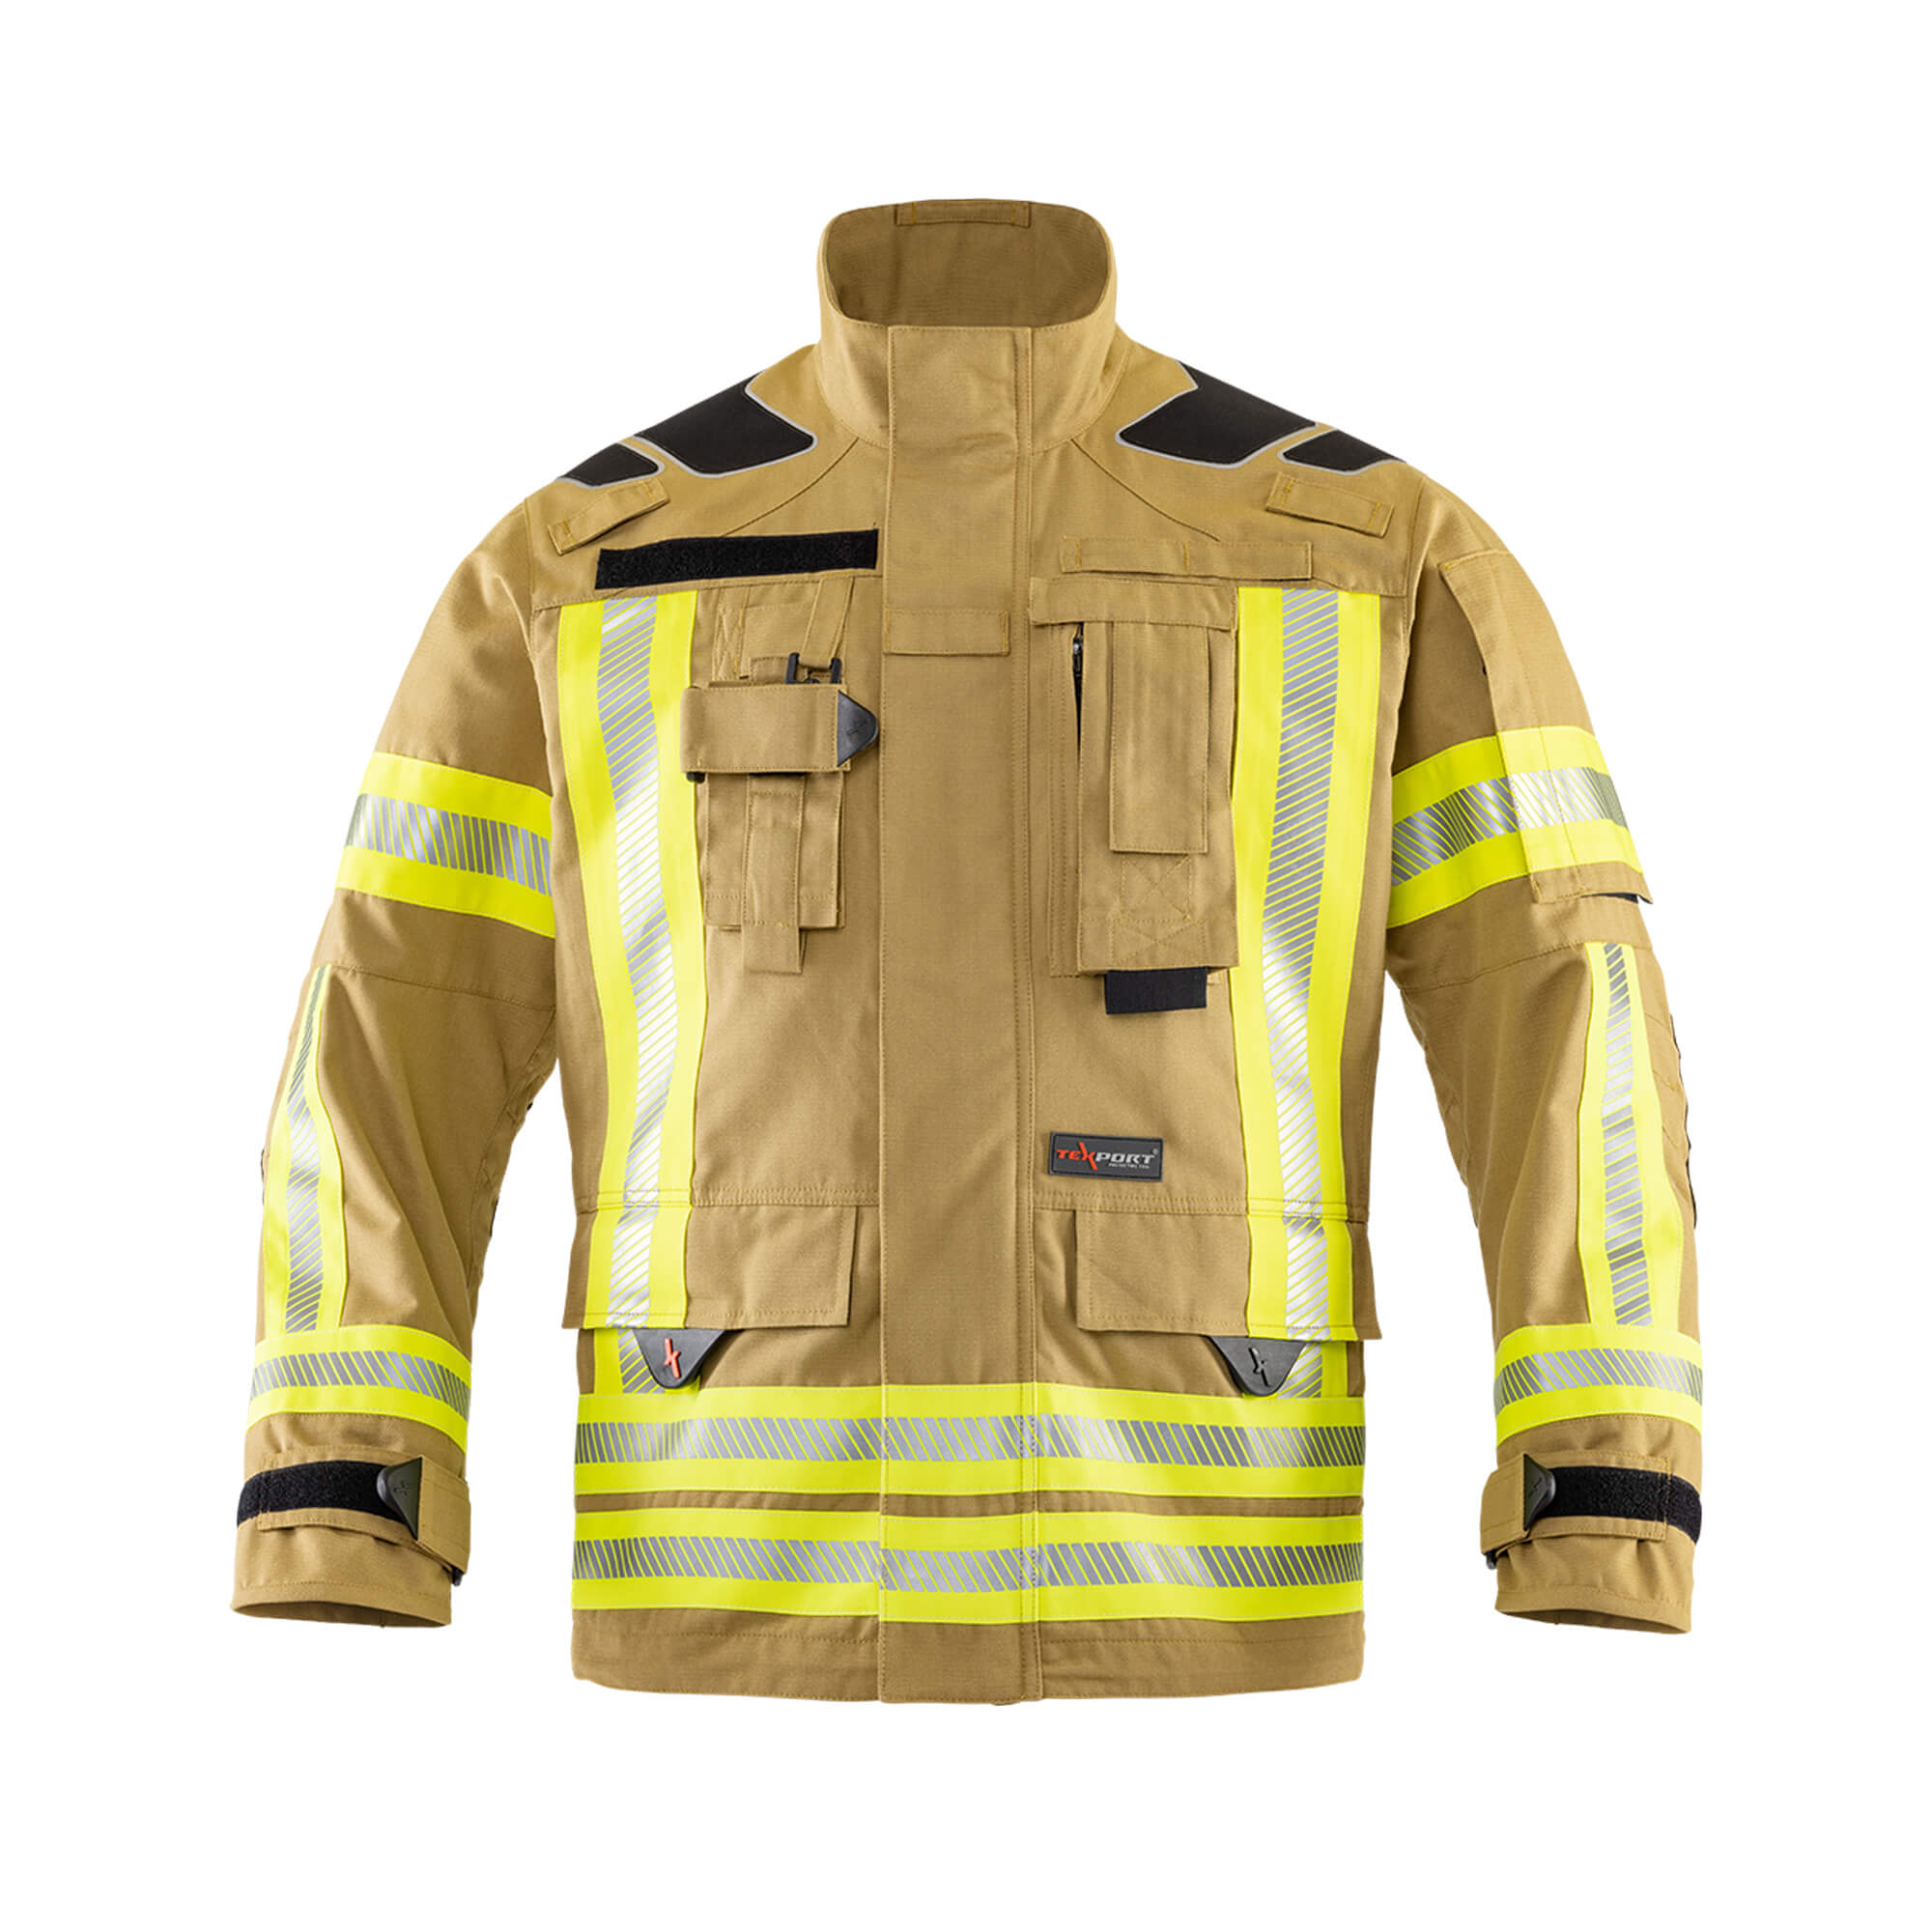 Fire Wildland Suit Texport Fire Recon